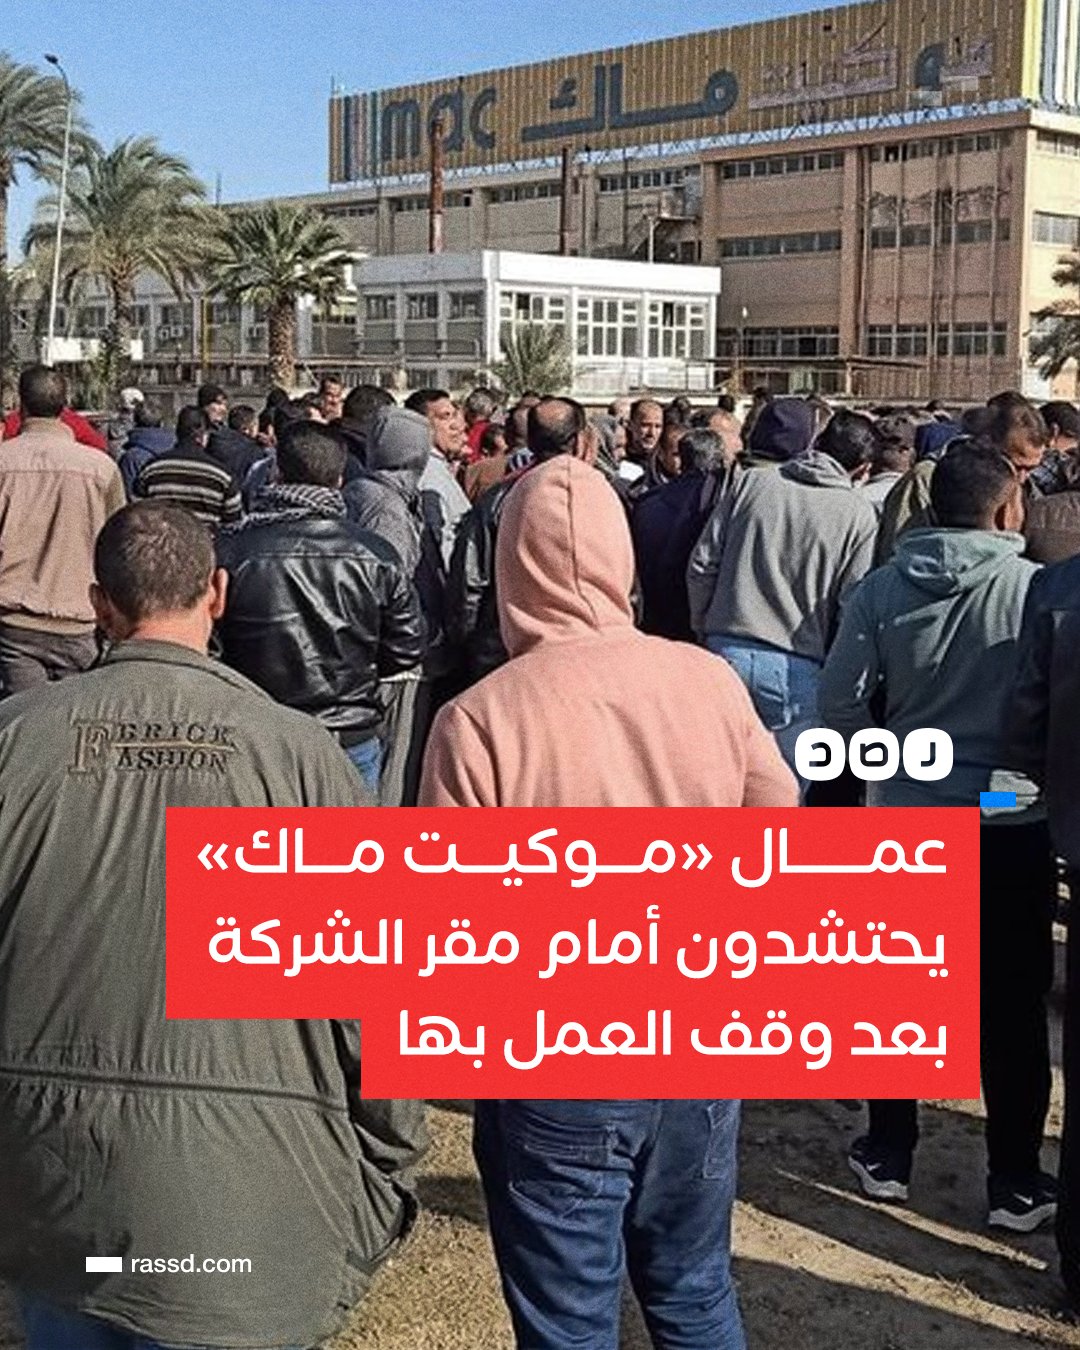 شبكة رصد on X: "عمال «موكيت ماك» يحتشدون أمام مقر الشركة بعد وقف العمل بها،  جراء مطالبتهم بزيادة الأجور #مصر https://t.co/9uS2duno9u" / X